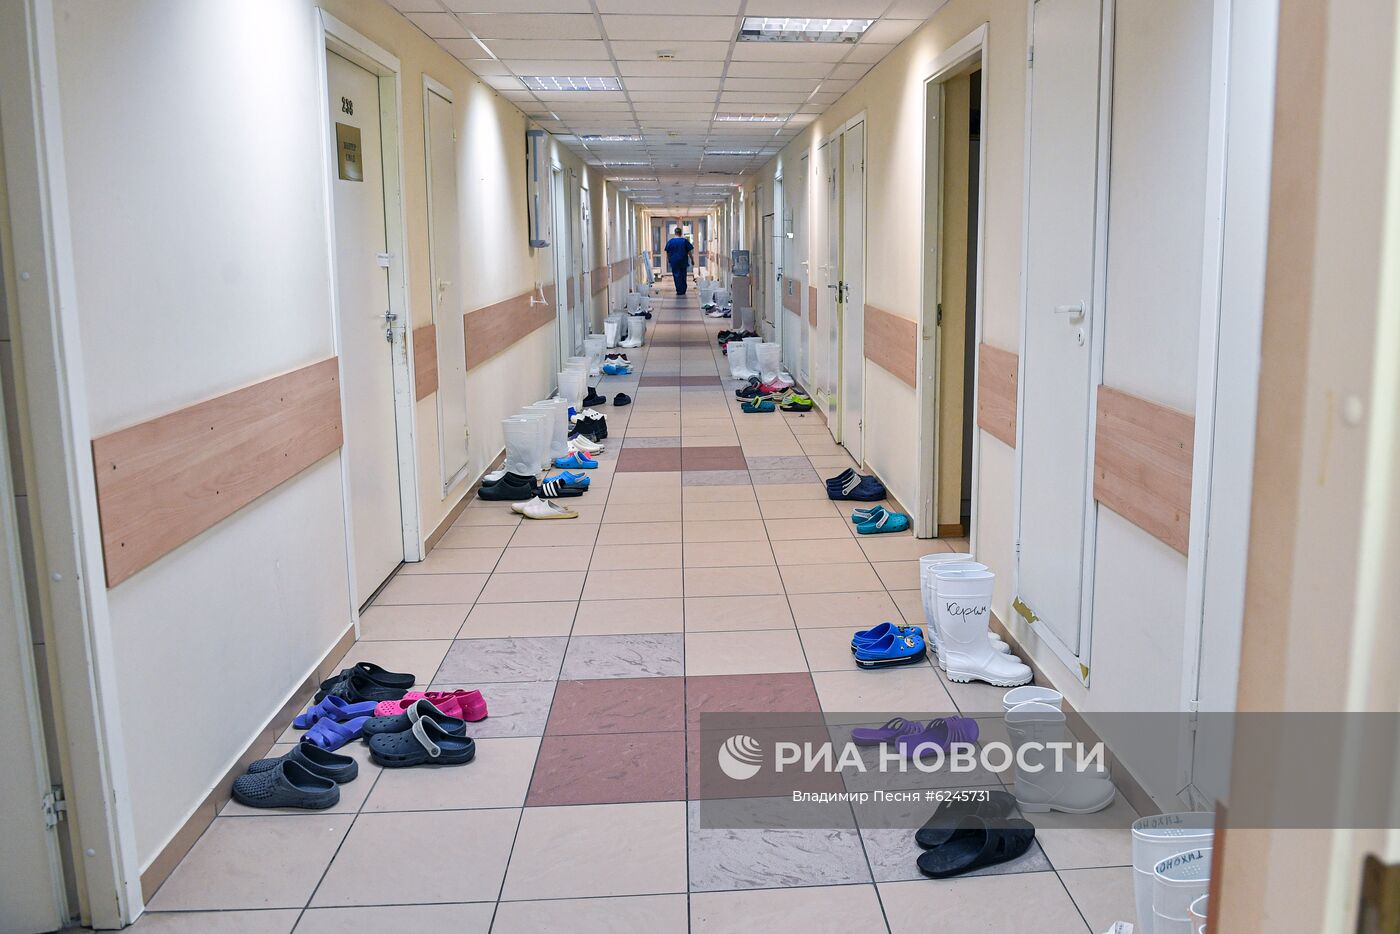 Госпиталь COVID-19 в УКБ №2 Первого МГМУ им. И. М. Сеченова